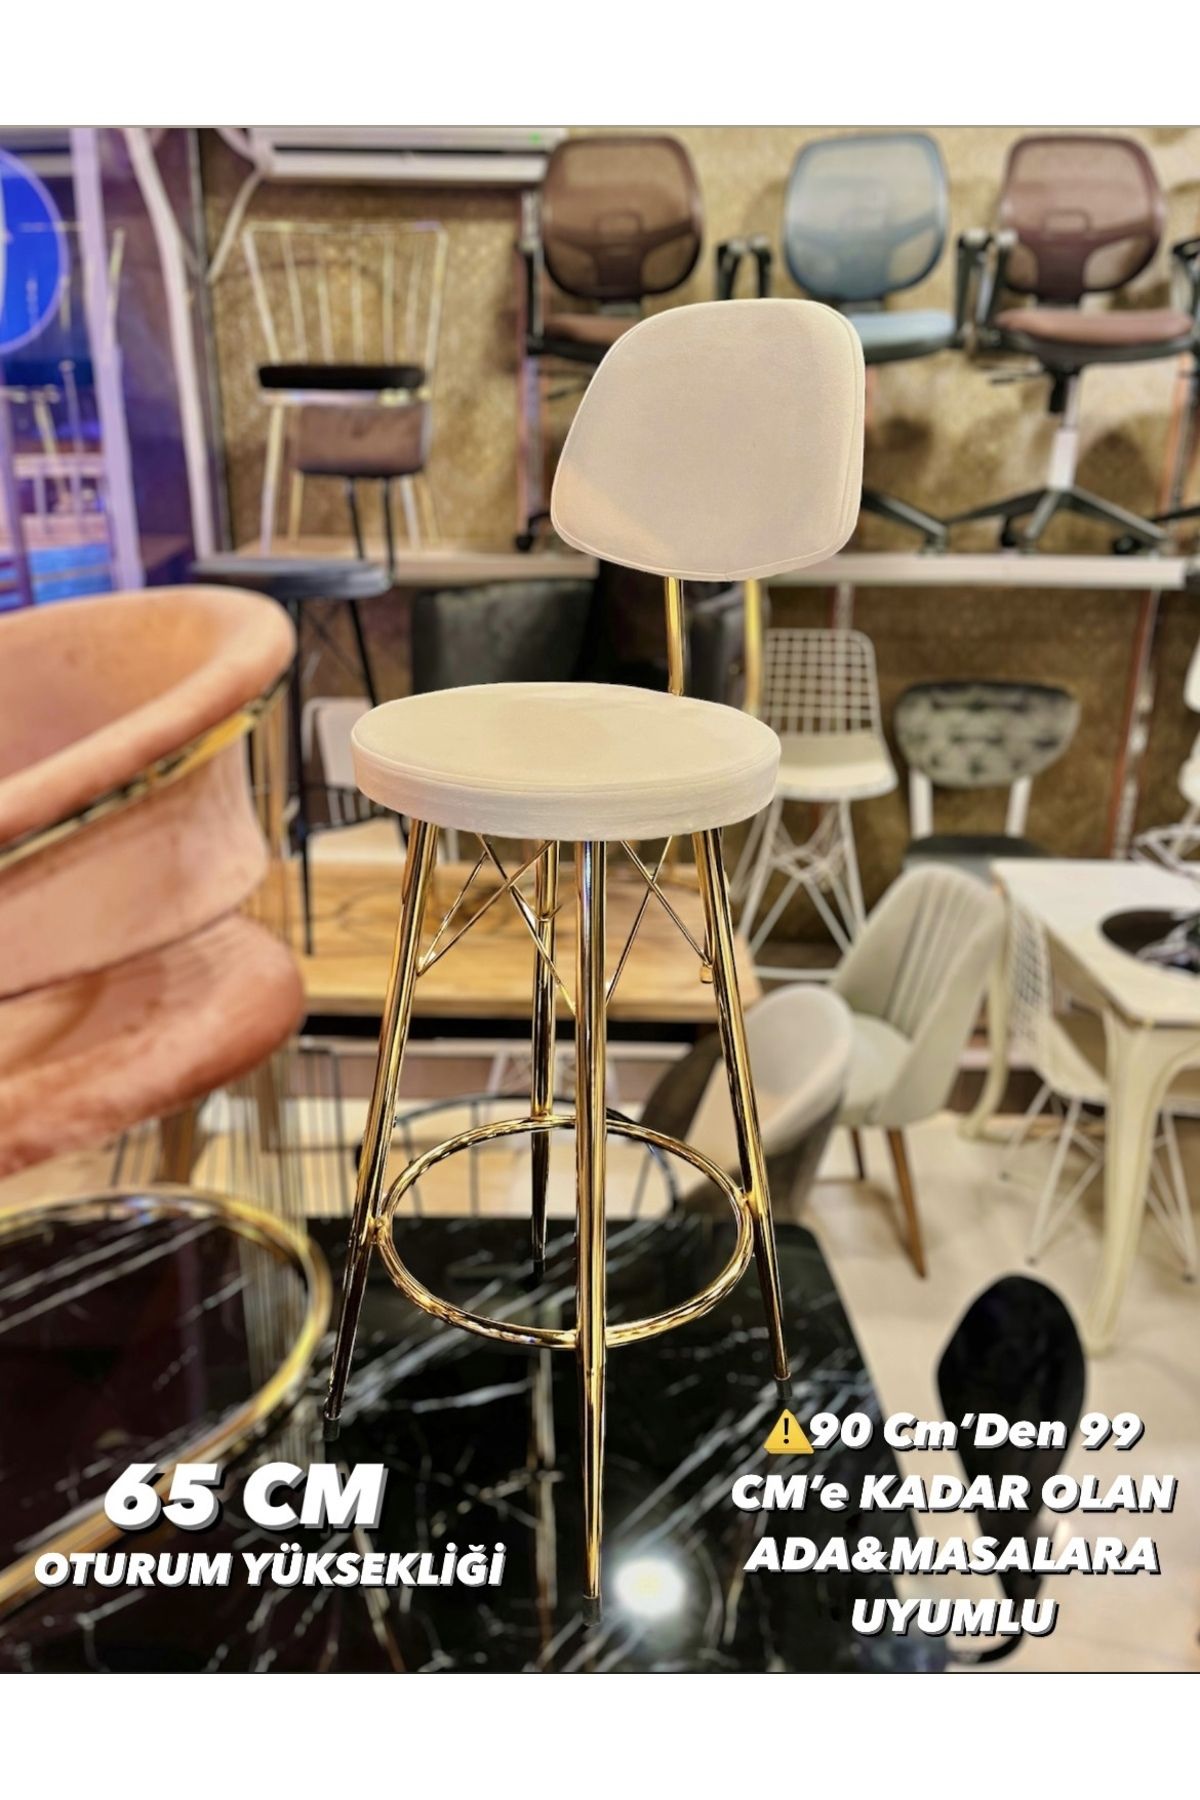 Sandalye Shop Yeni Dolce Bar Sandalyesi 65 cm Kırık Beyaz Gold.90 Cmden 99 Cm’e Kadar Olan Ada&Masalara Uyumlu.